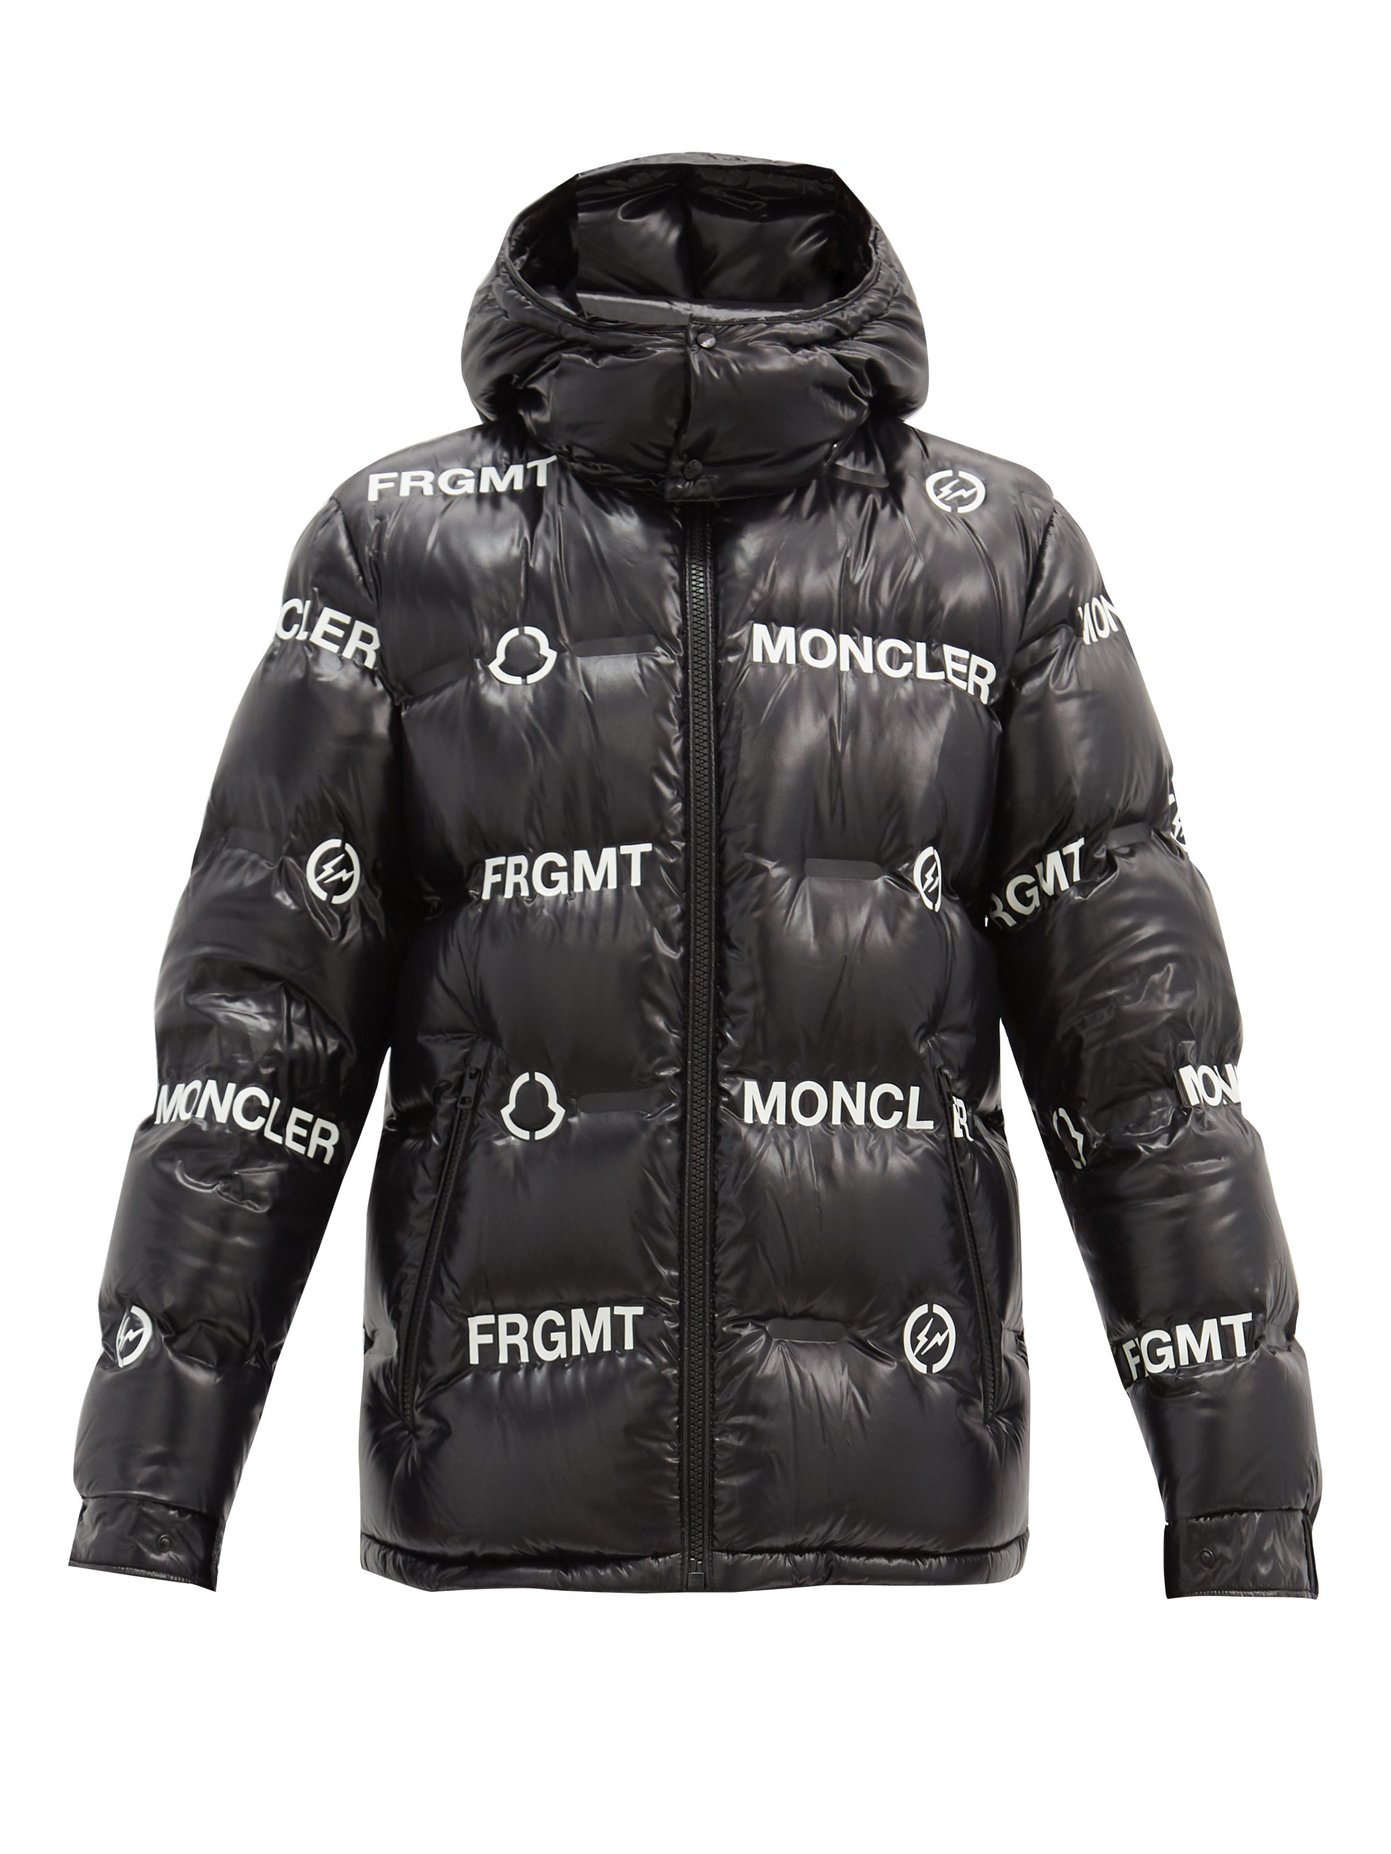 moncler fragment jacket